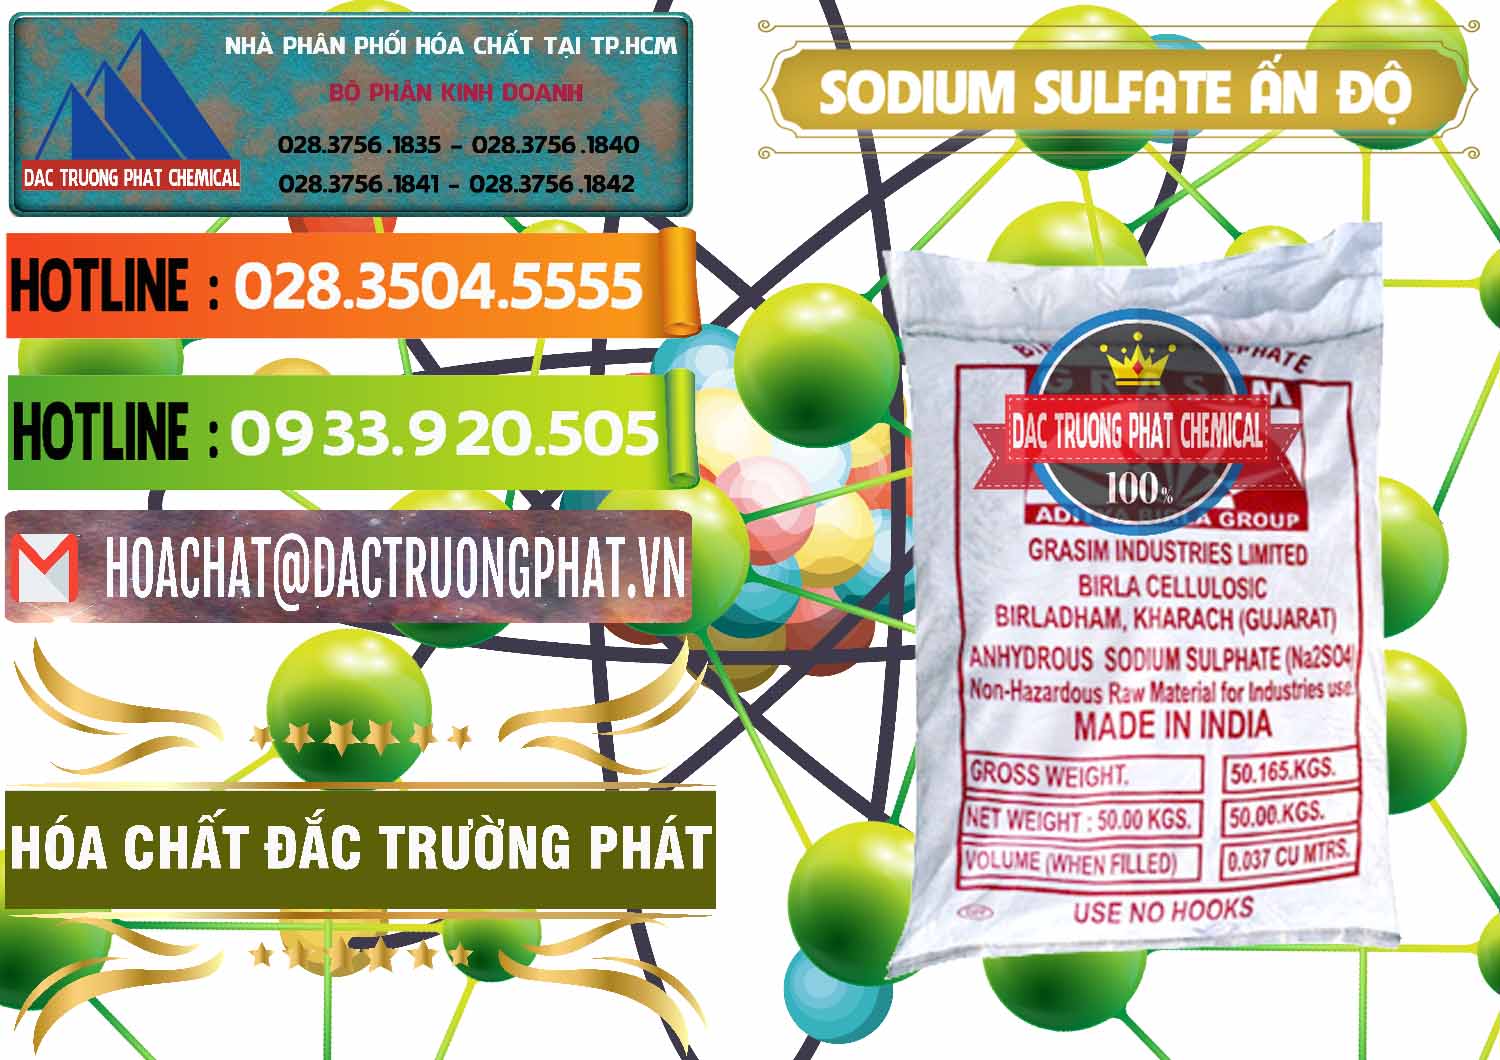 Đơn vị bán & cung ứng Sodium Sulphate - Muối Sunfat Na2SO4 Aditya Birla Grasim Ấn Độ India - 0462 - Cty chuyên nhập khẩu và phân phối hóa chất tại TP.HCM - cungcaphoachat.com.vn